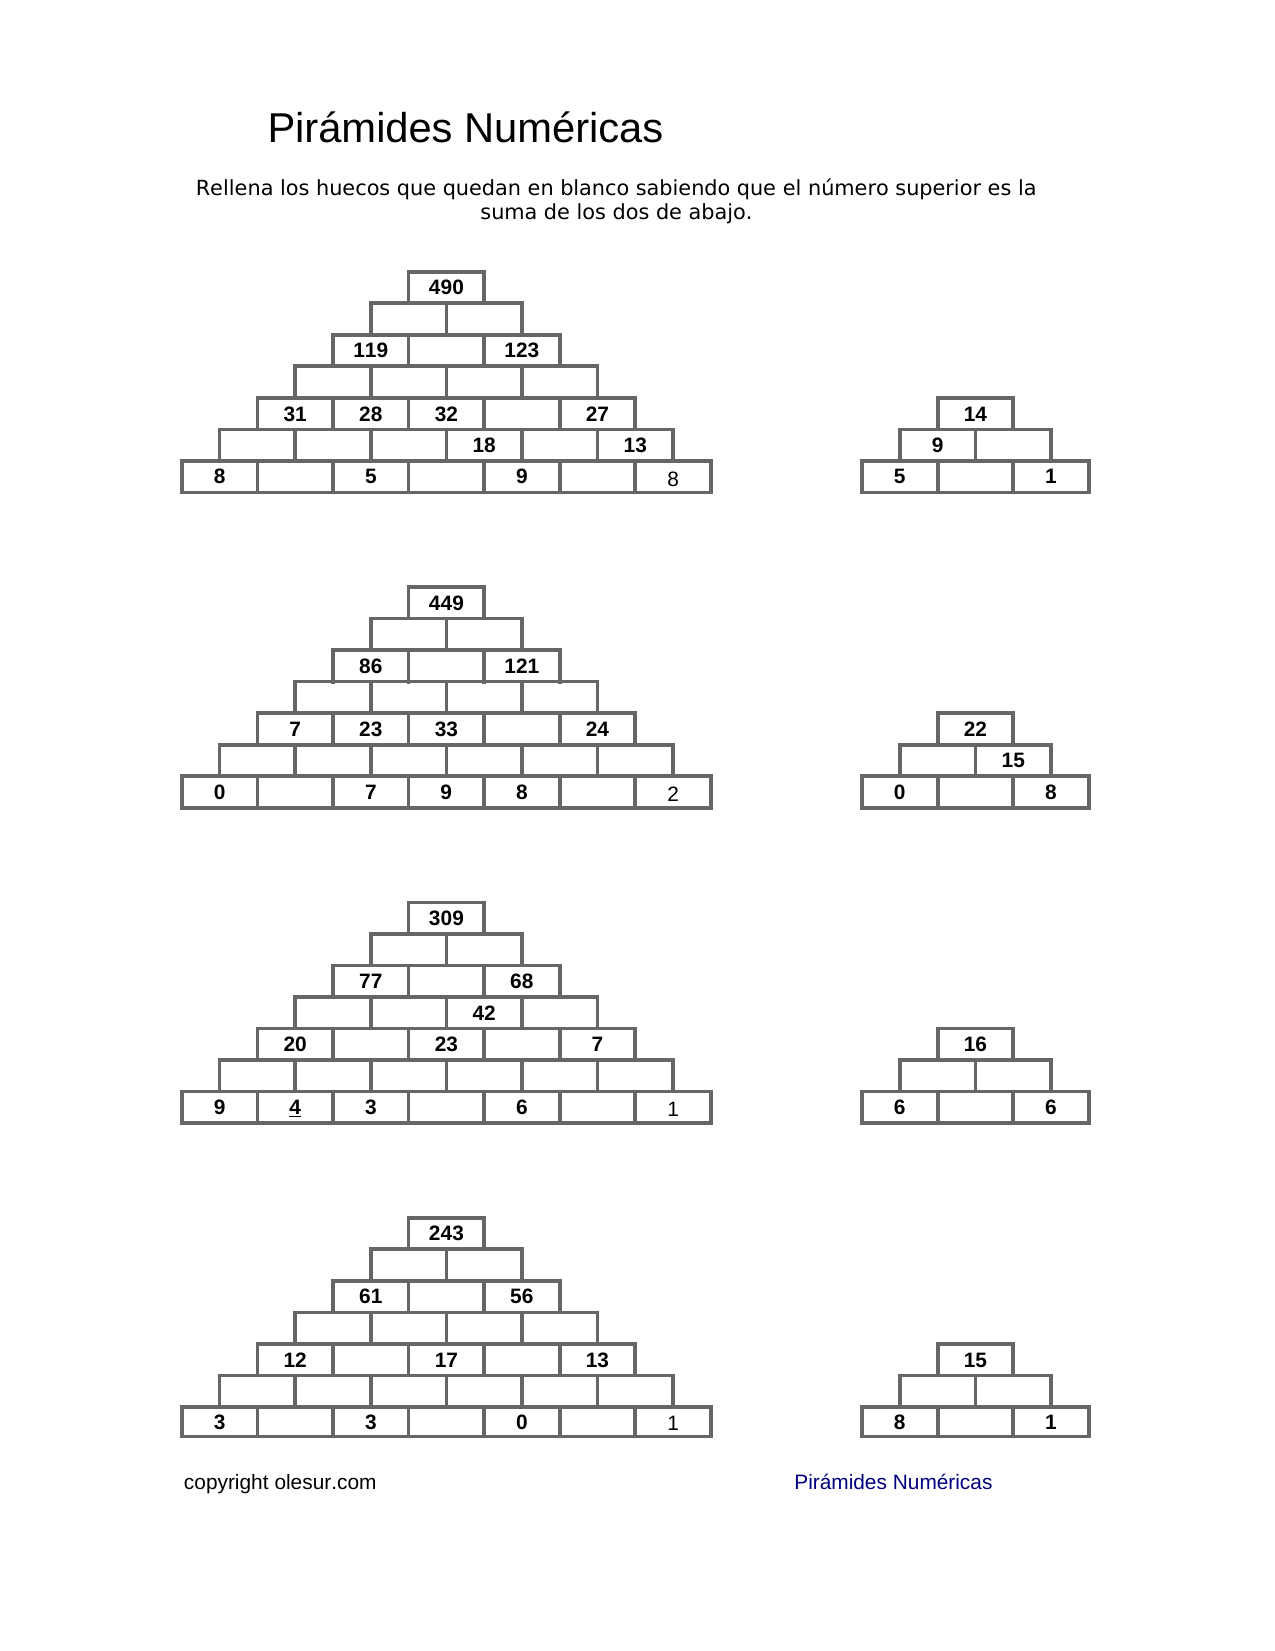 Descargar: Pirámides Matemáticas . – olesur